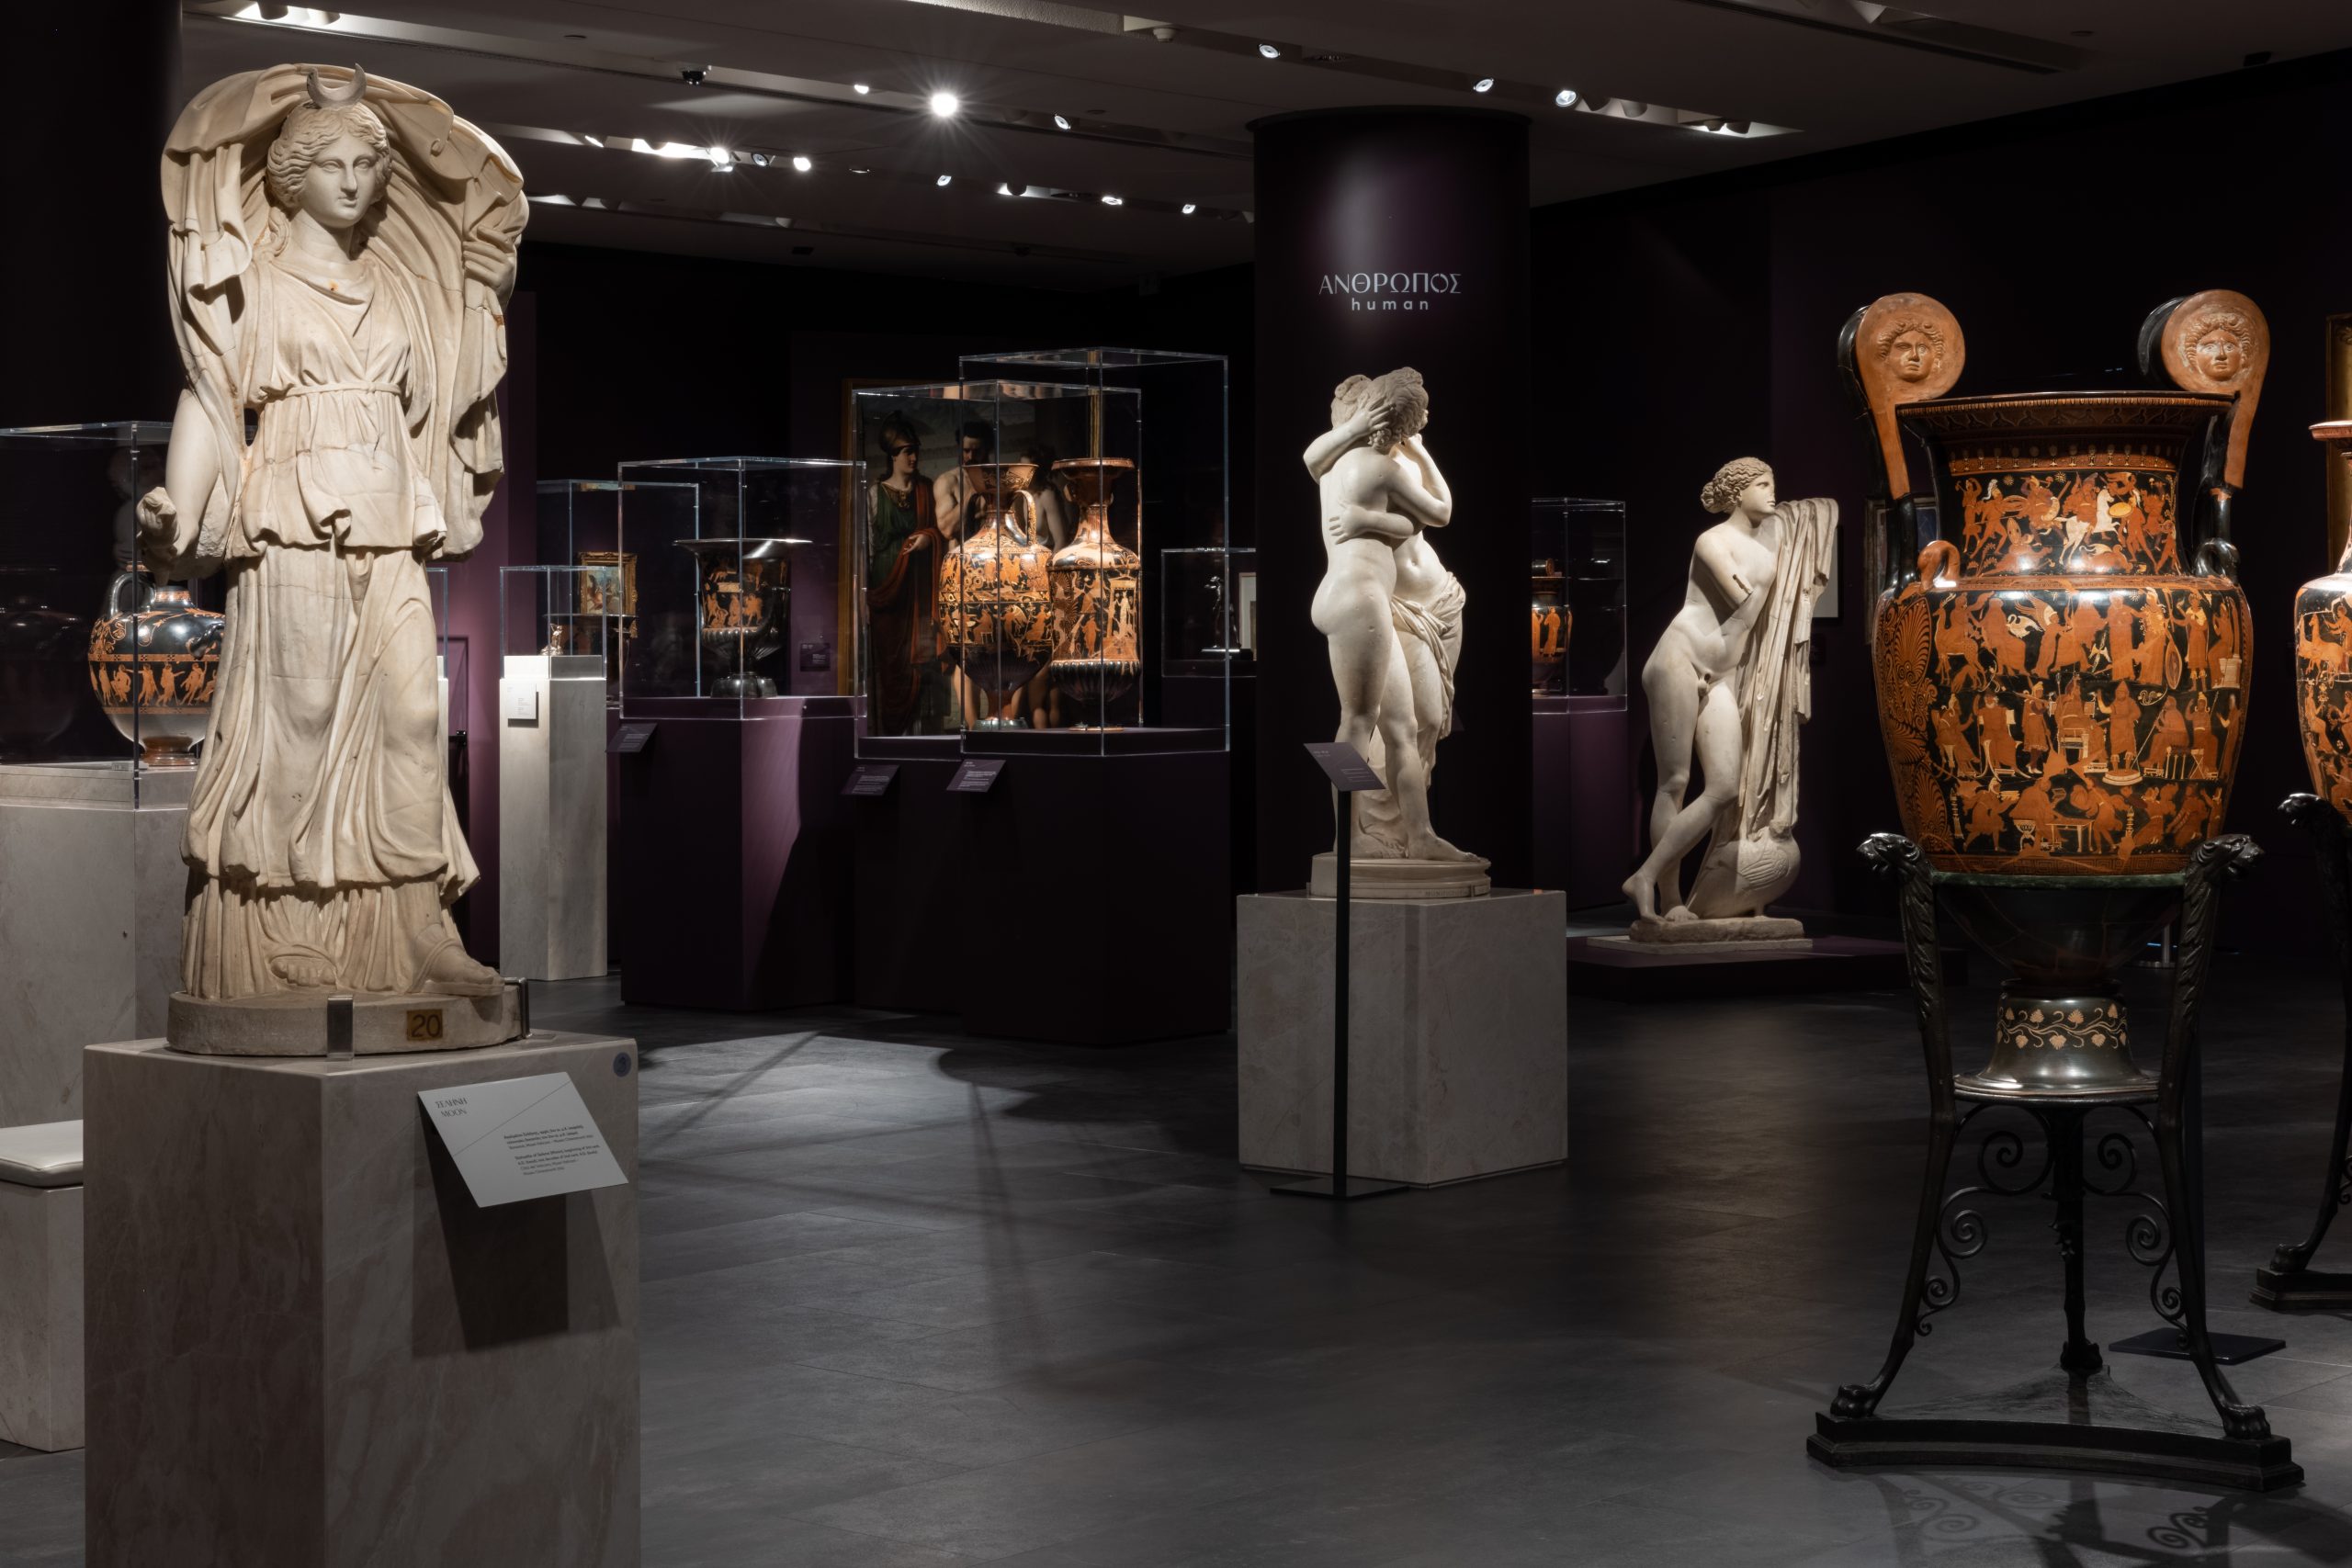 Μουσείο Ακρόπολης – Έκθεση: “ΝοΗΜΑΤΑ. Προσωποποιήσεις και Αλληγορίες από την Αρχαιότητα έως Σήμερα”